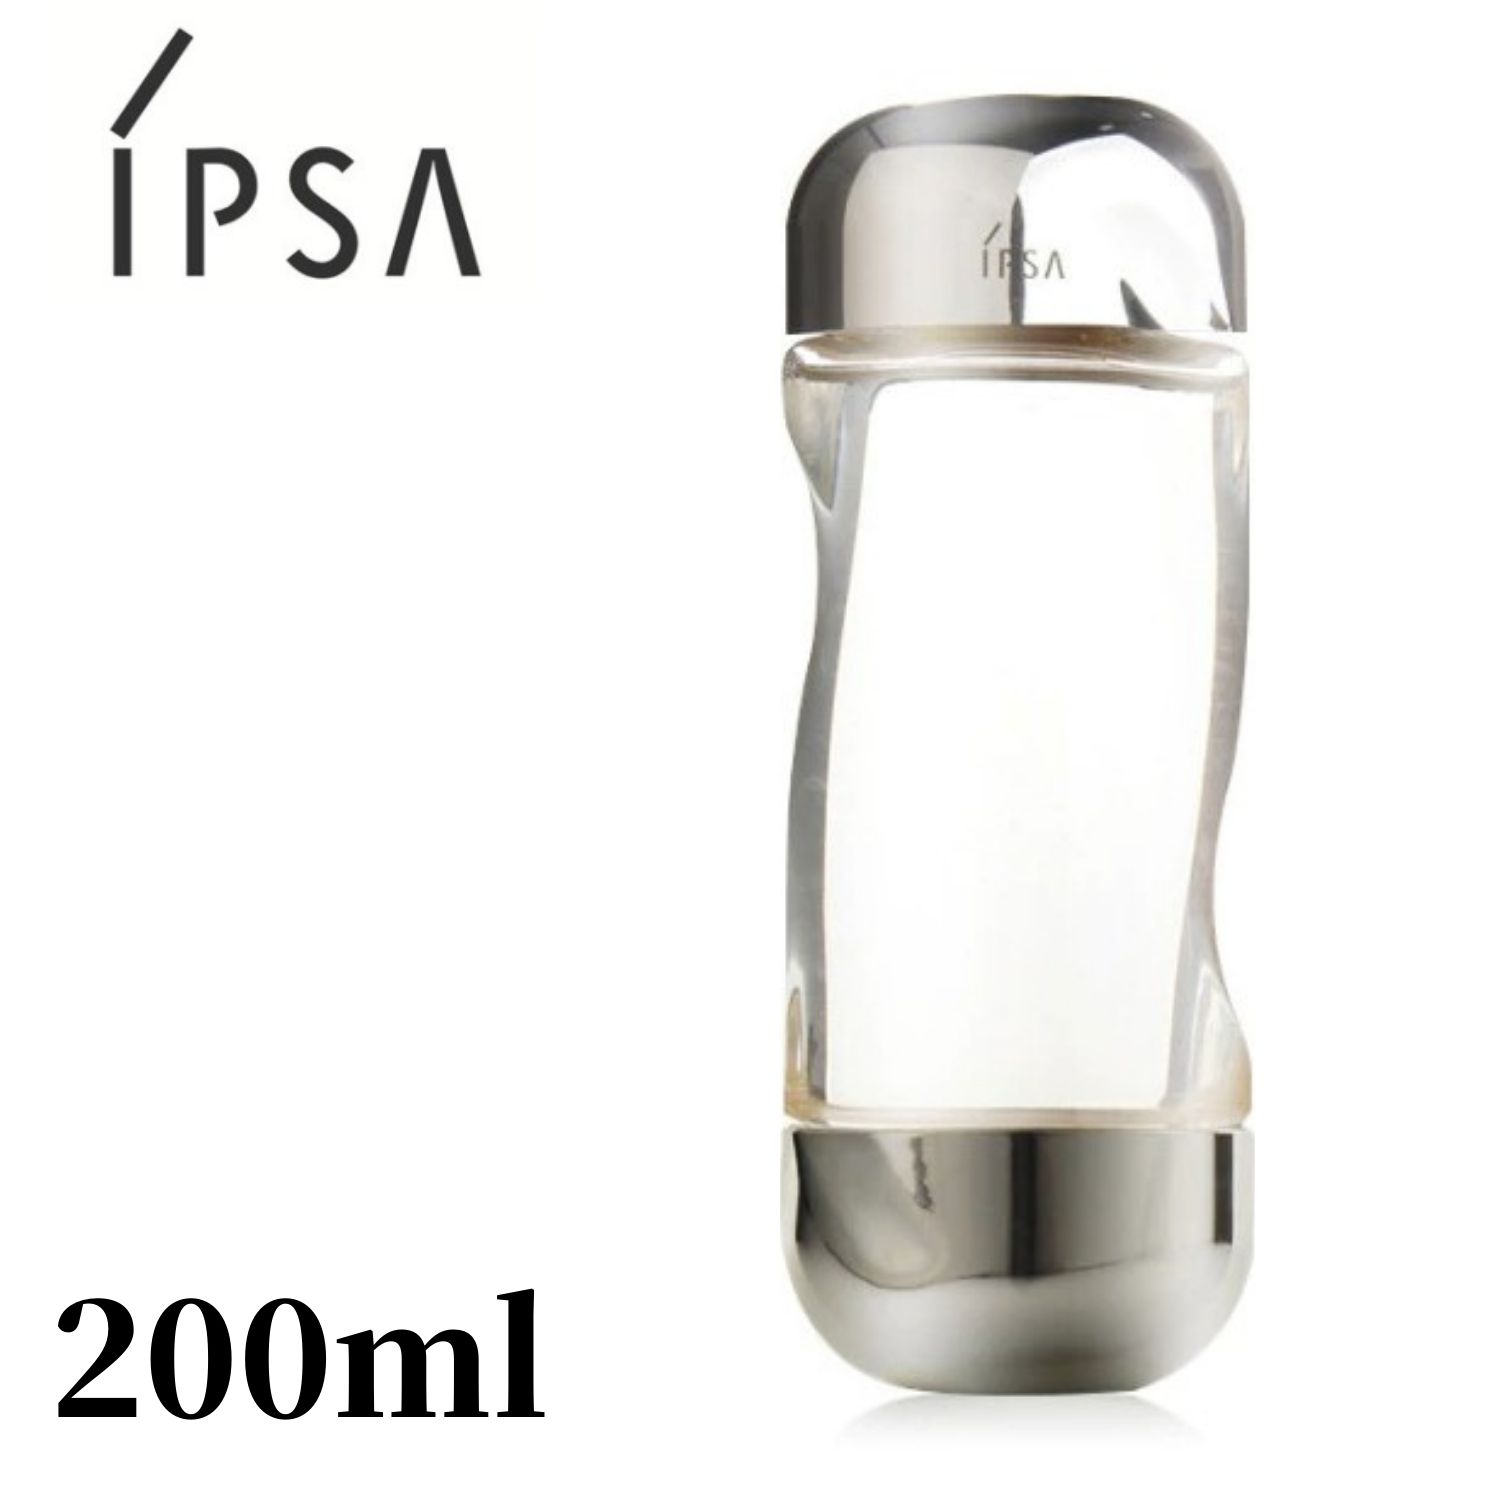 【楽天市場】IPSA ザ・タイムRアクア イプサ 200ml 化粧水 無添加 